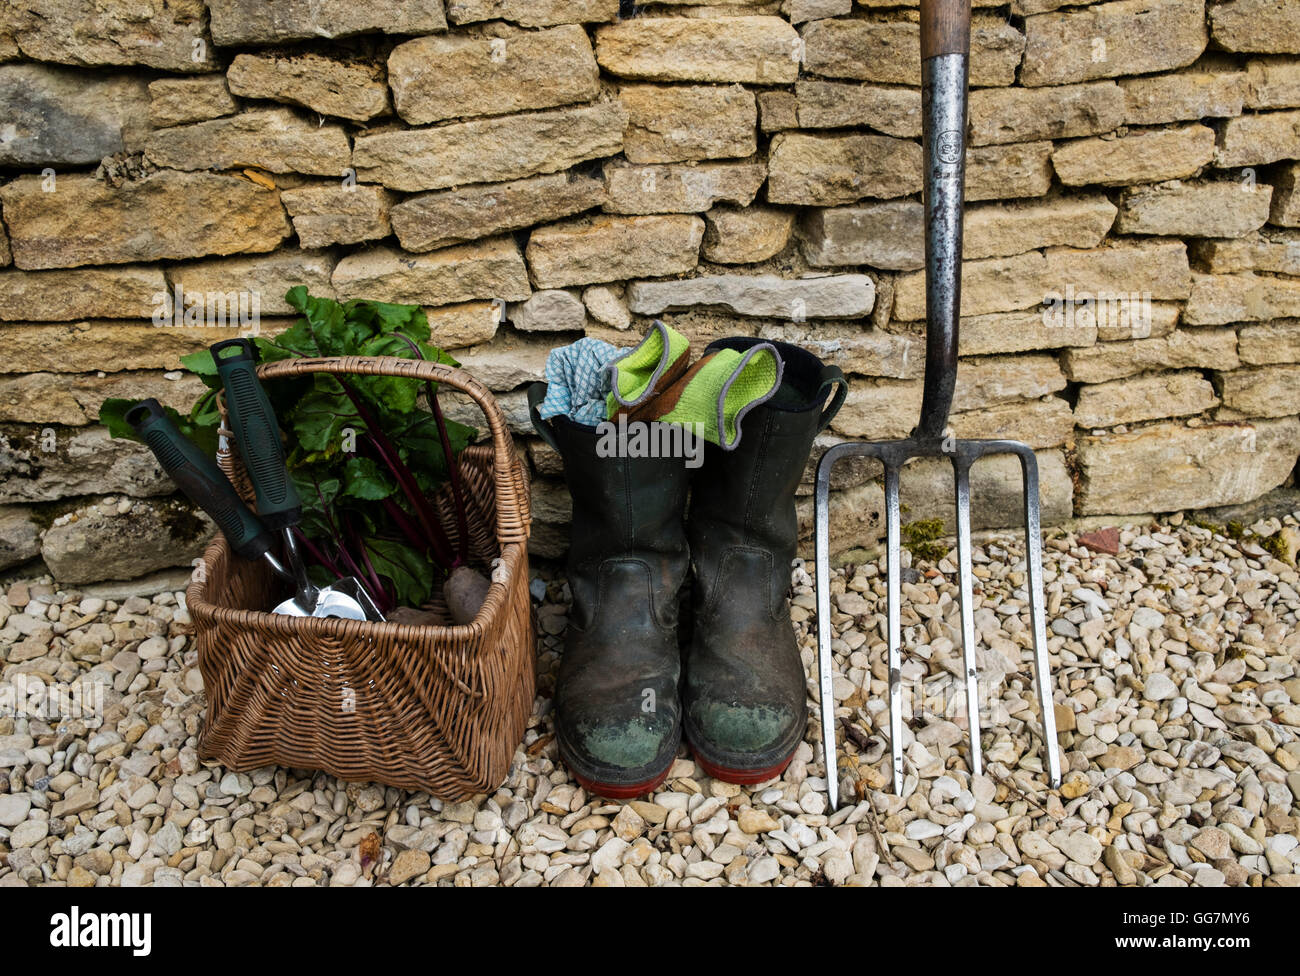 Détail de l'outils de jardiniers et les bottes dans un jardin anglais Banque D'Images